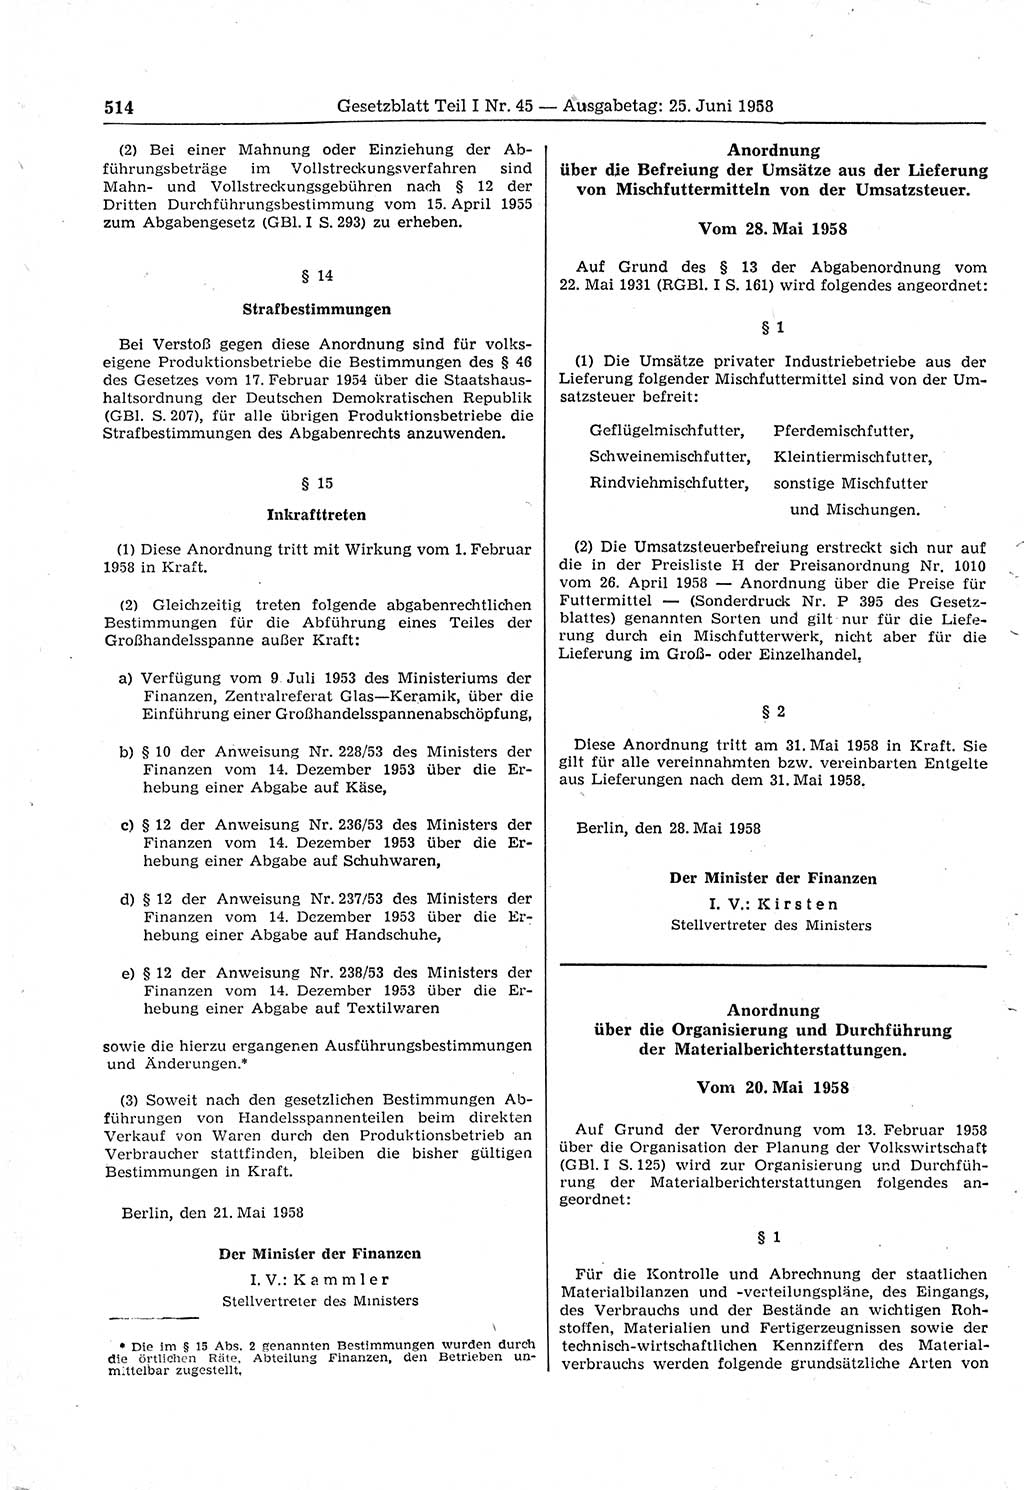 Gesetzblatt (GBl.) der Deutschen Demokratischen Republik (DDR) Teil Ⅰ 1958, Seite 514 (GBl. DDR Ⅰ 1958, S. 514)